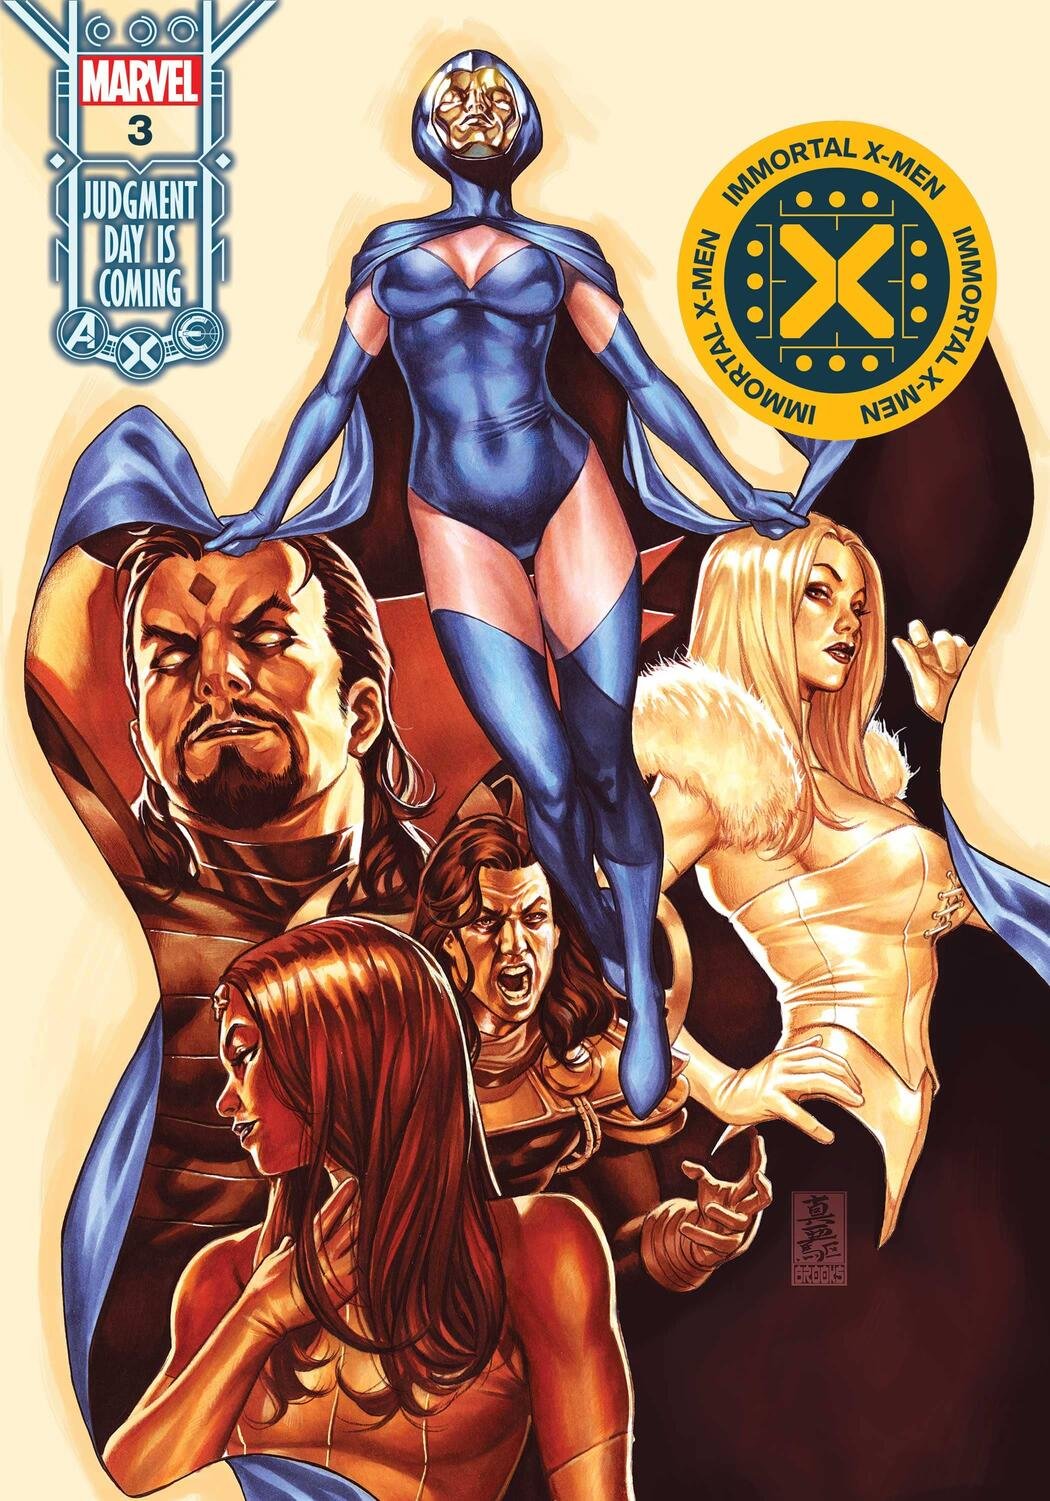 Cover di Immortal X-Men 3 di Mark Brooks, che apre la strada verso Judgment Day